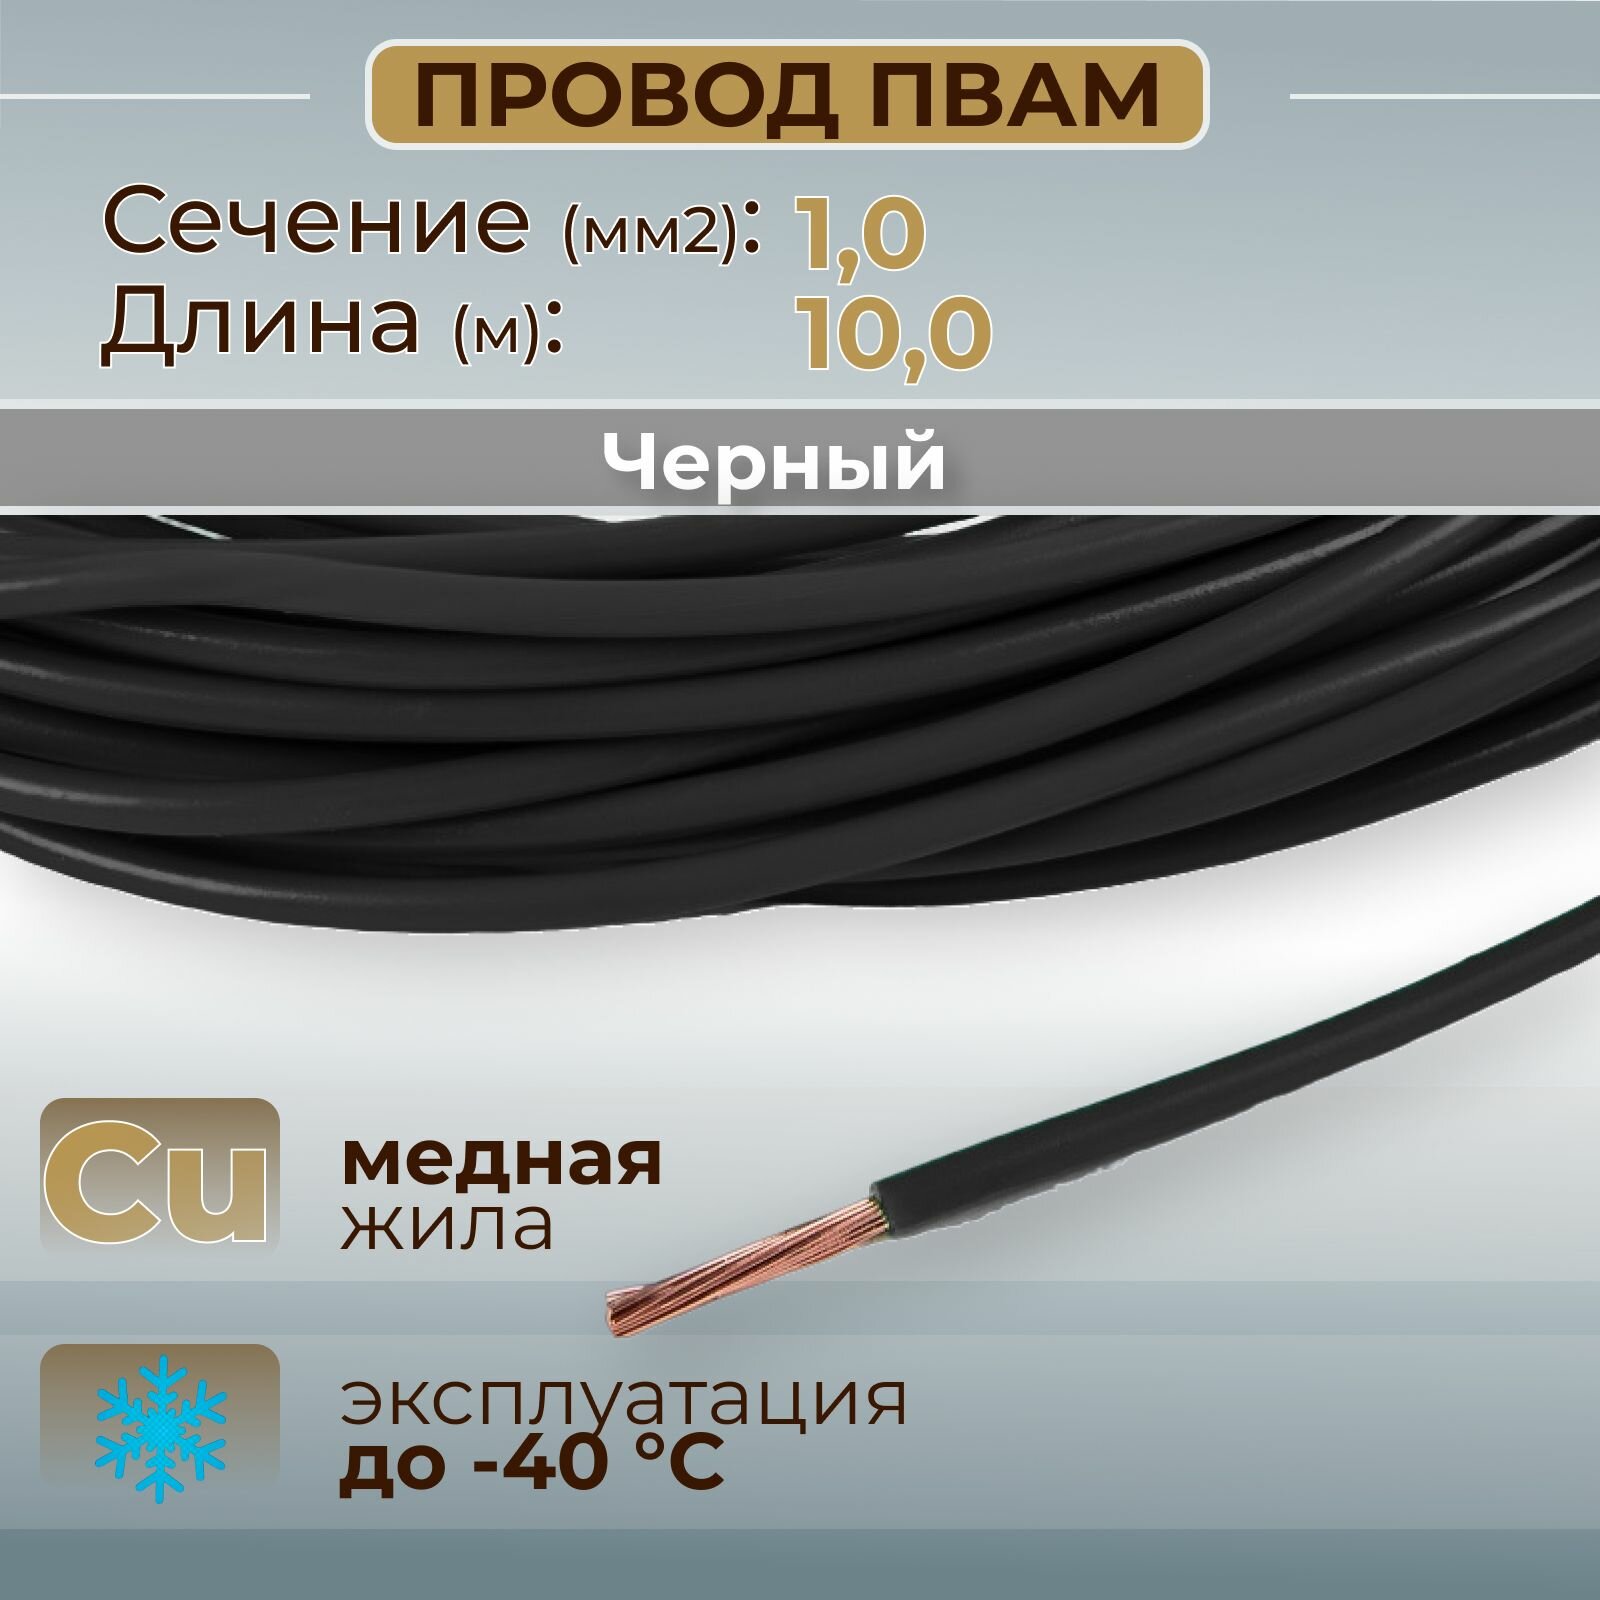 Провода автомобильные пвам цвет черный с сечением 1,0 кв. мм, длина 10м